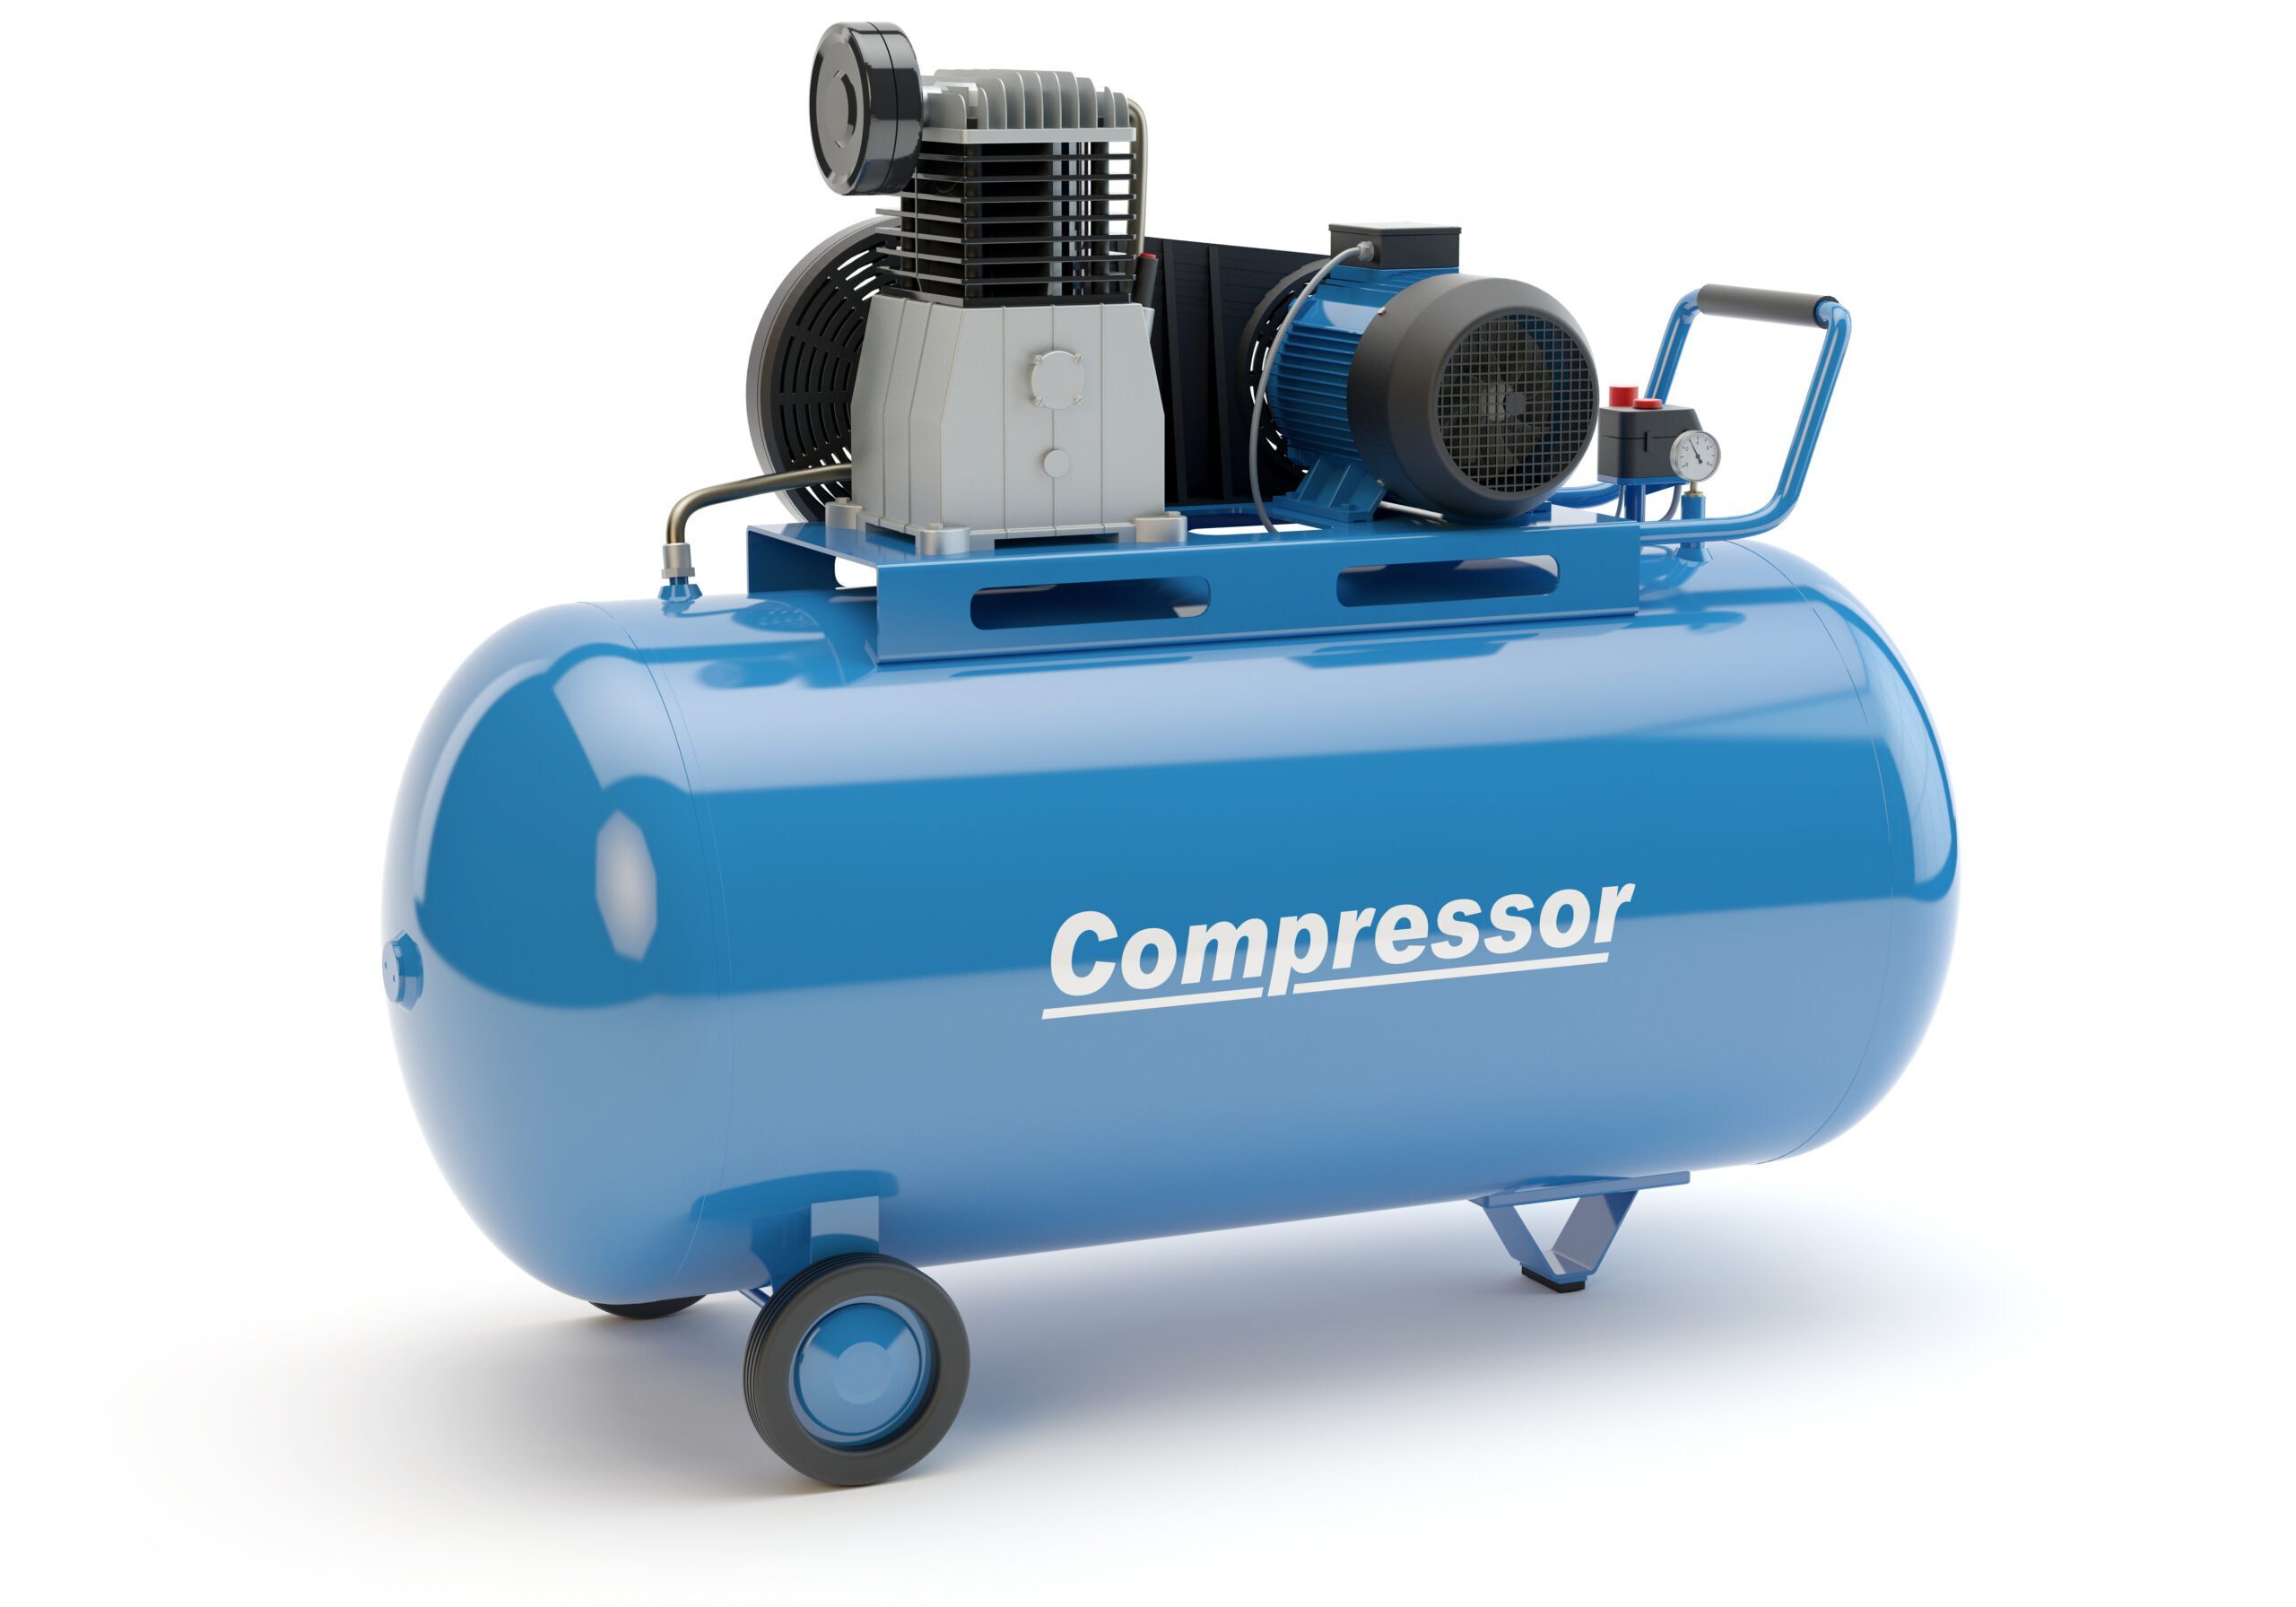 Blue Air Compressor